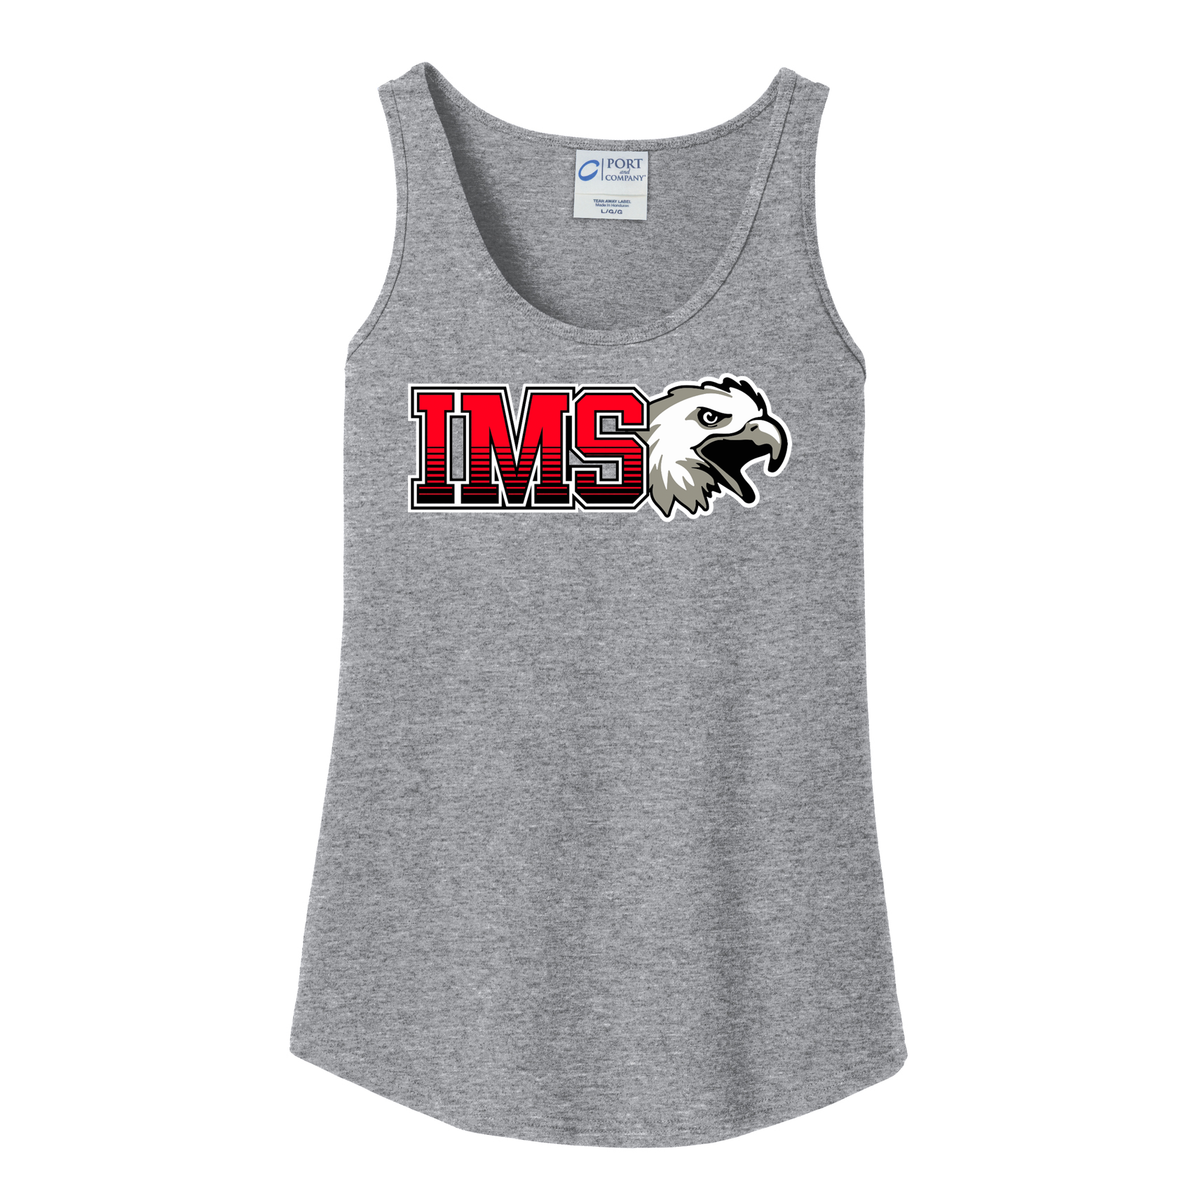 IMS Lacrosse Women's Tank Top